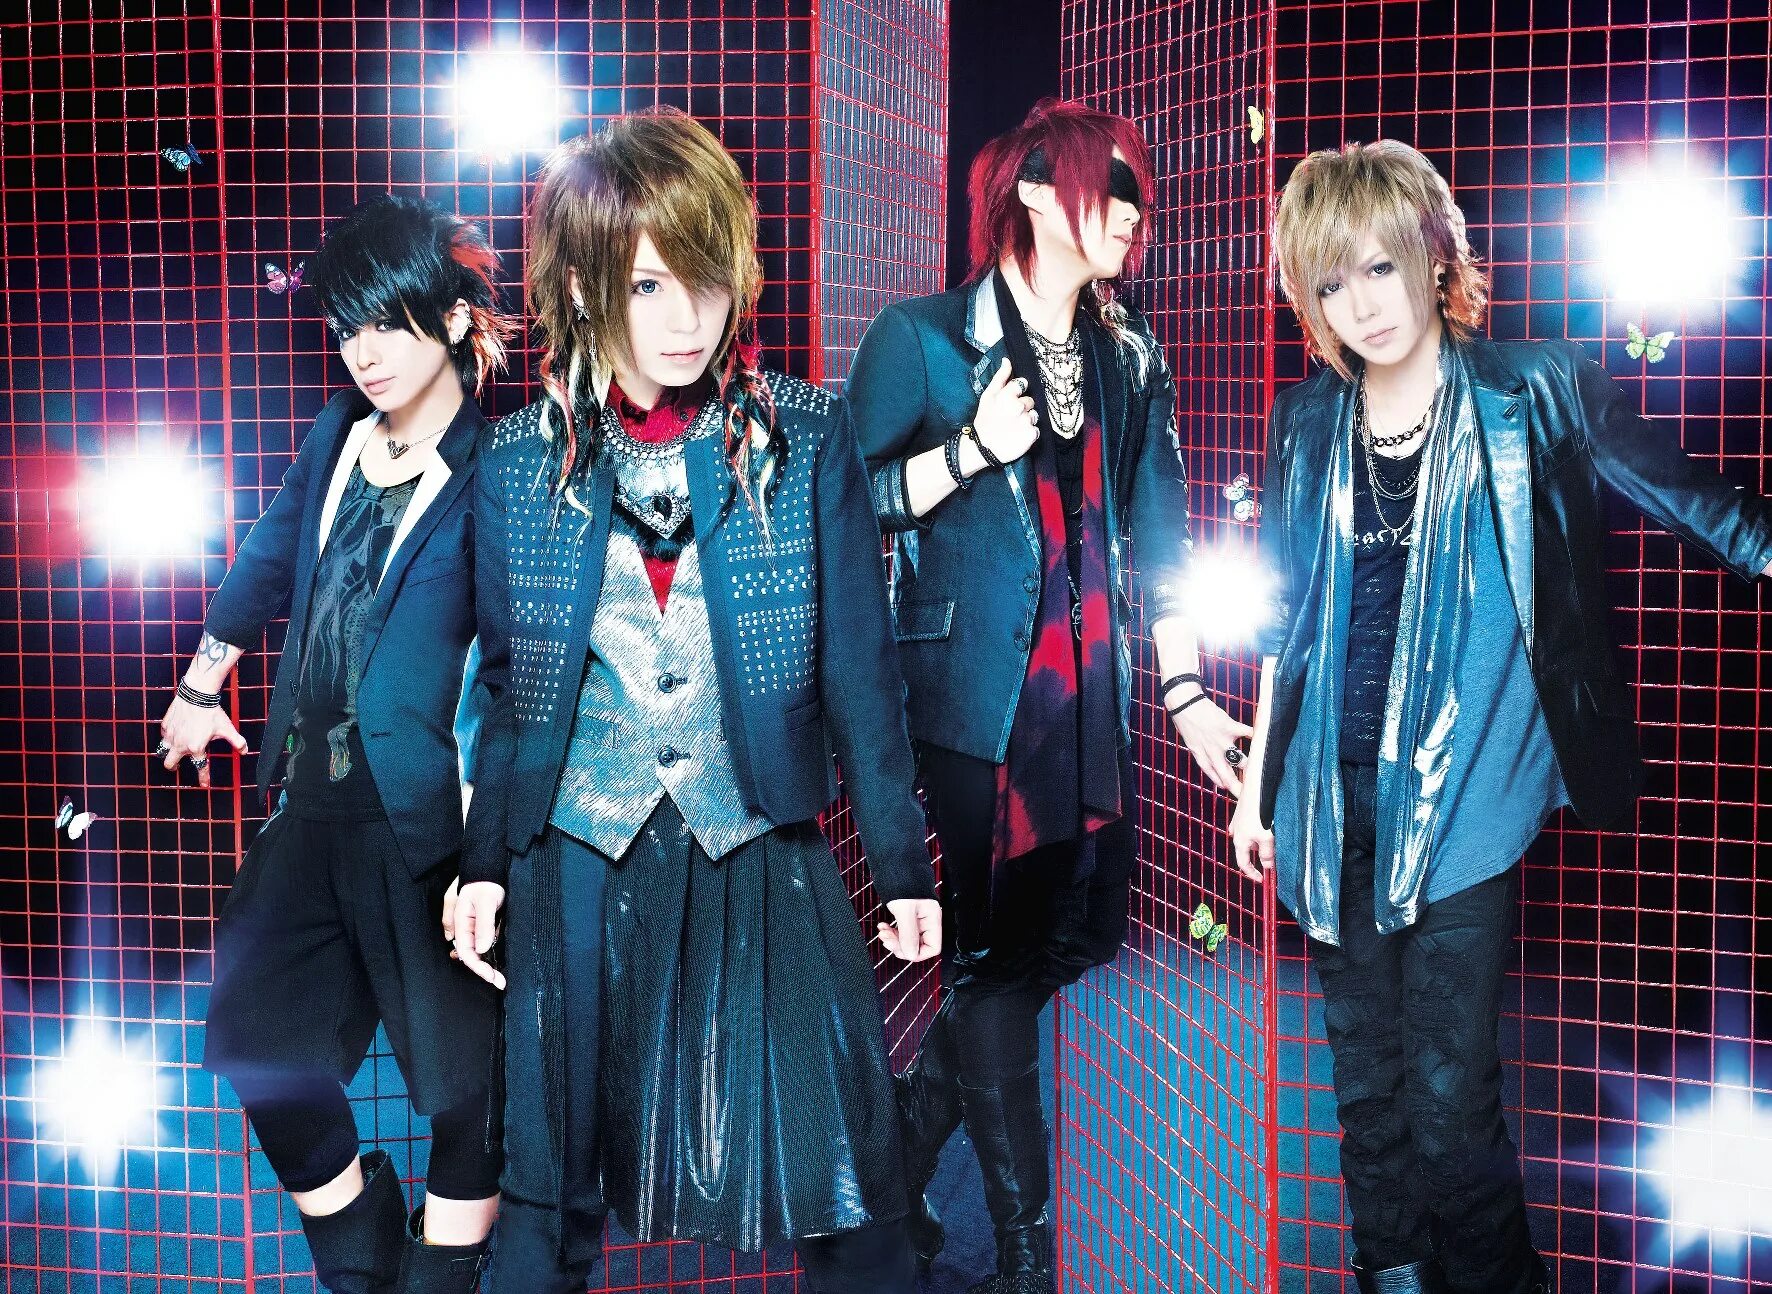 Div картинки. Японская группа Reiji. Японские музыкальные группы парней. Японская группа певцов мальчиков. Японские группы музыкальные мужские популярные.